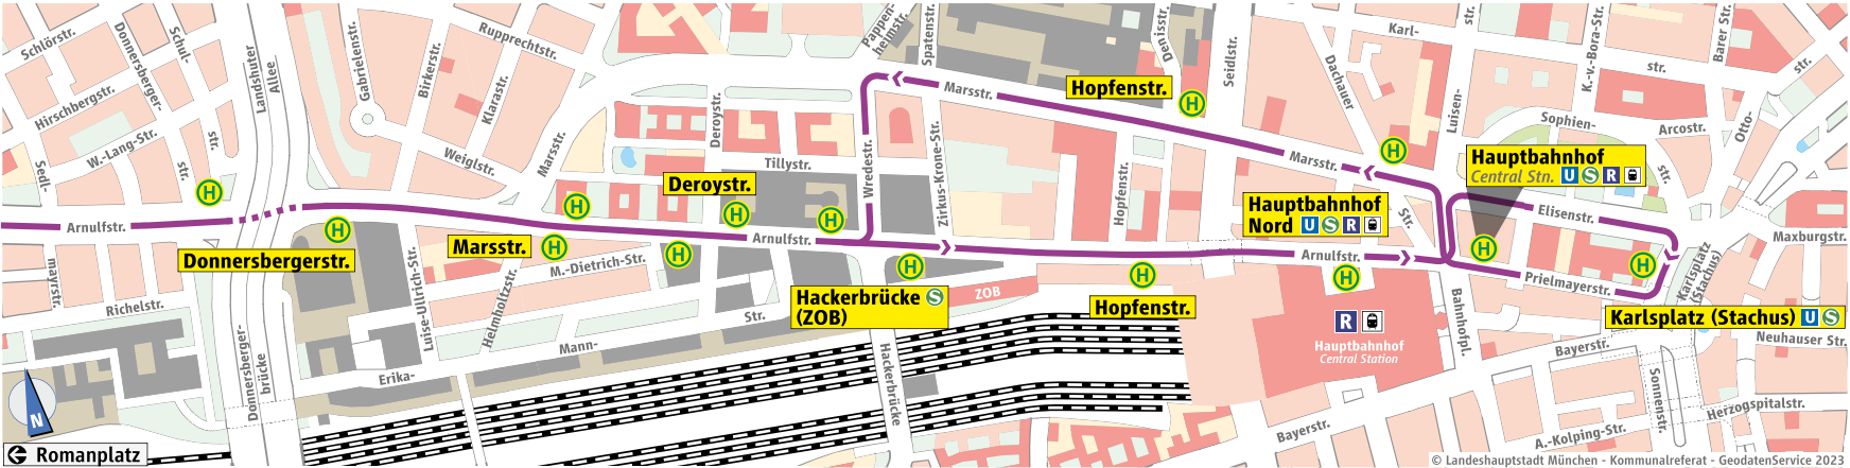 Grafische Darstellung des Ersatzverkehrs zwischen Donnersbergerstraße und Karlsplatz (Stachus).